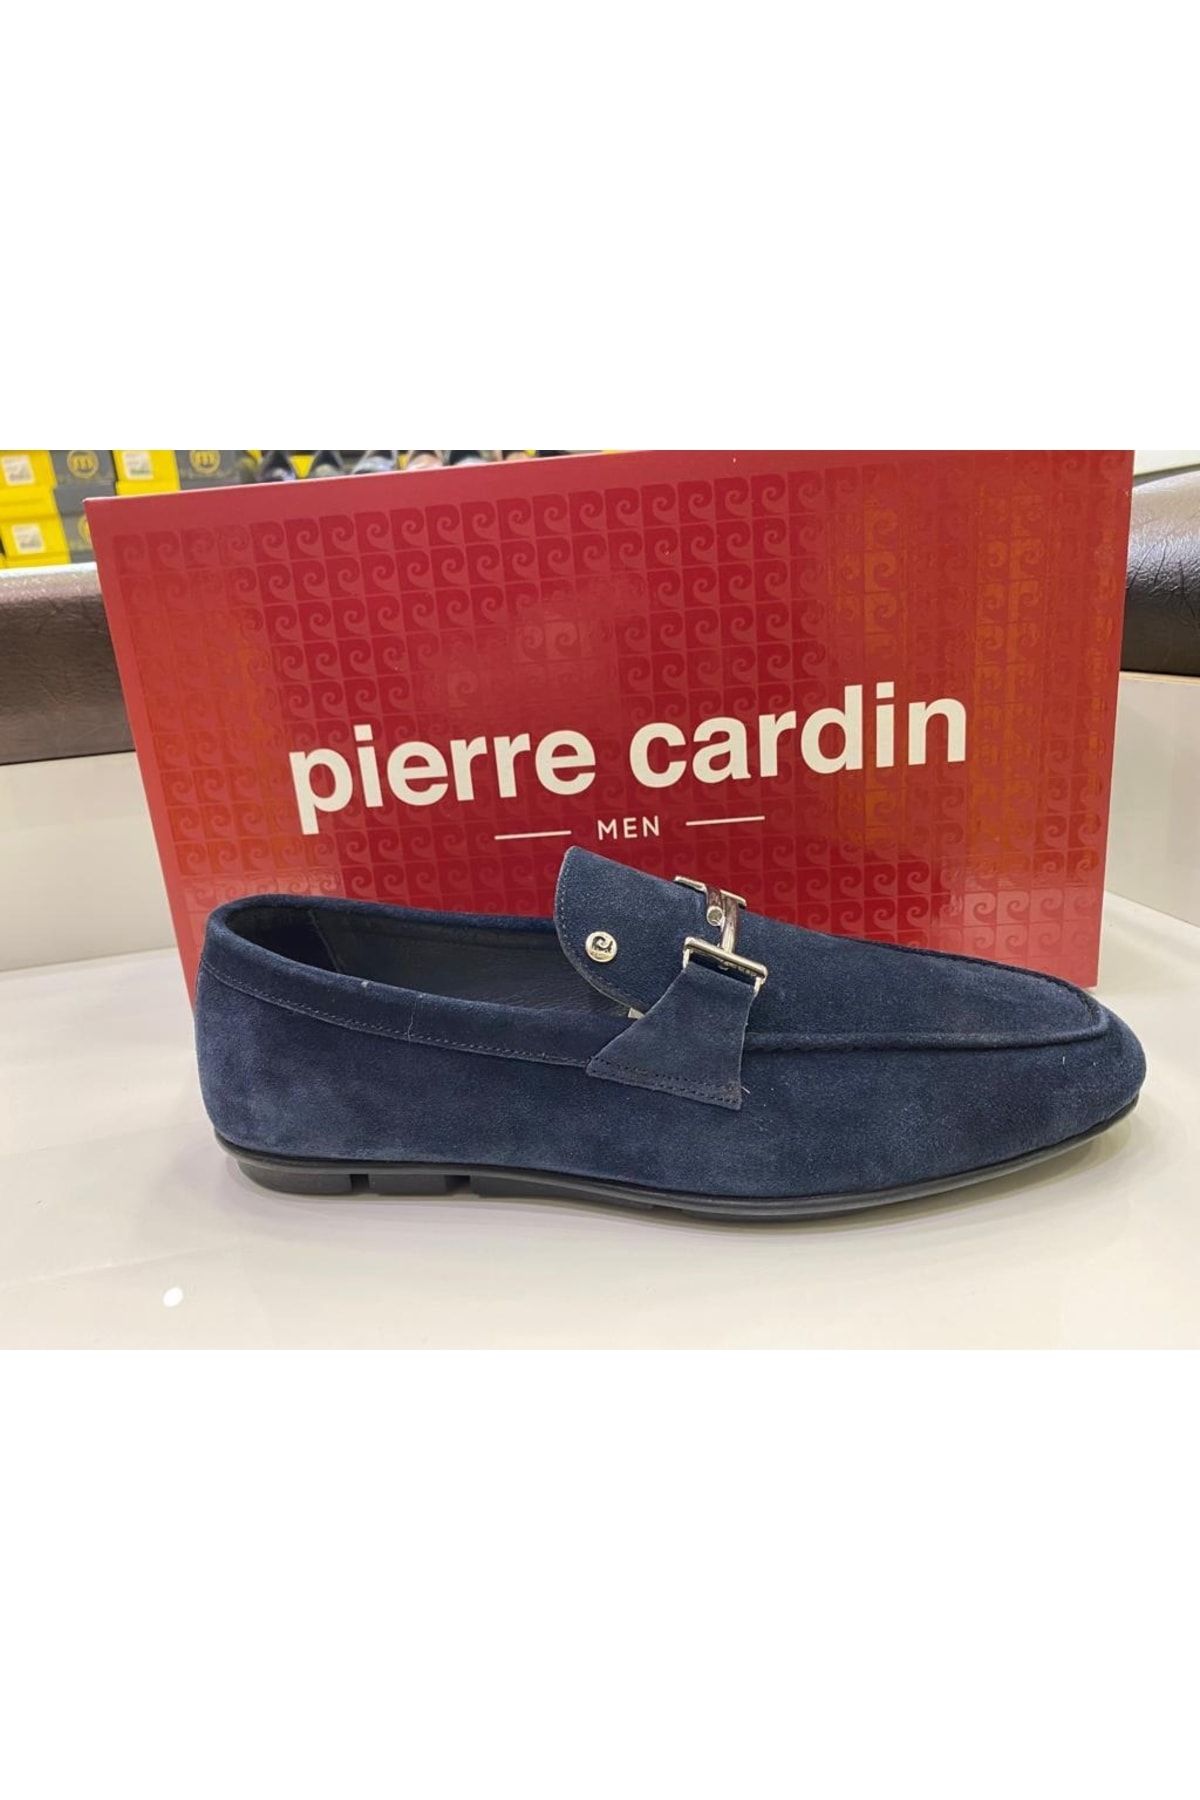 Pierre Cardin 63458 Lacivert Süet Deri Erkek Klasik Babet Ayakkabı